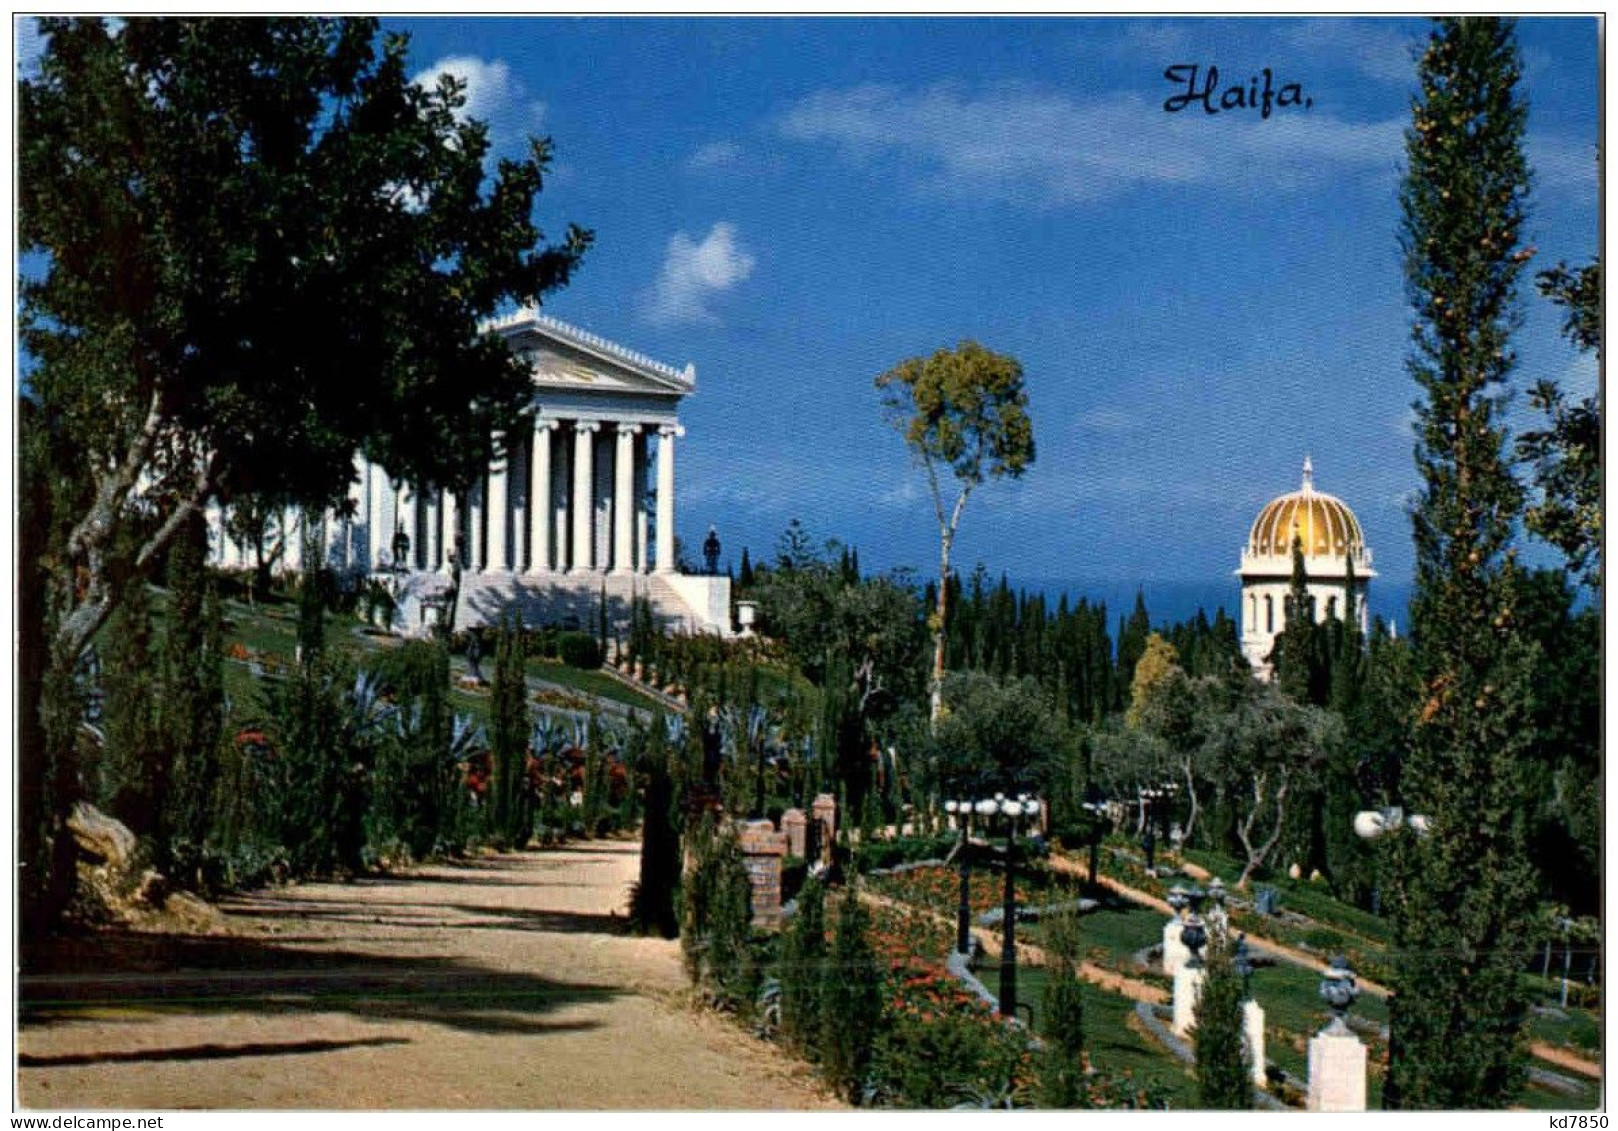 Haifa - Israel